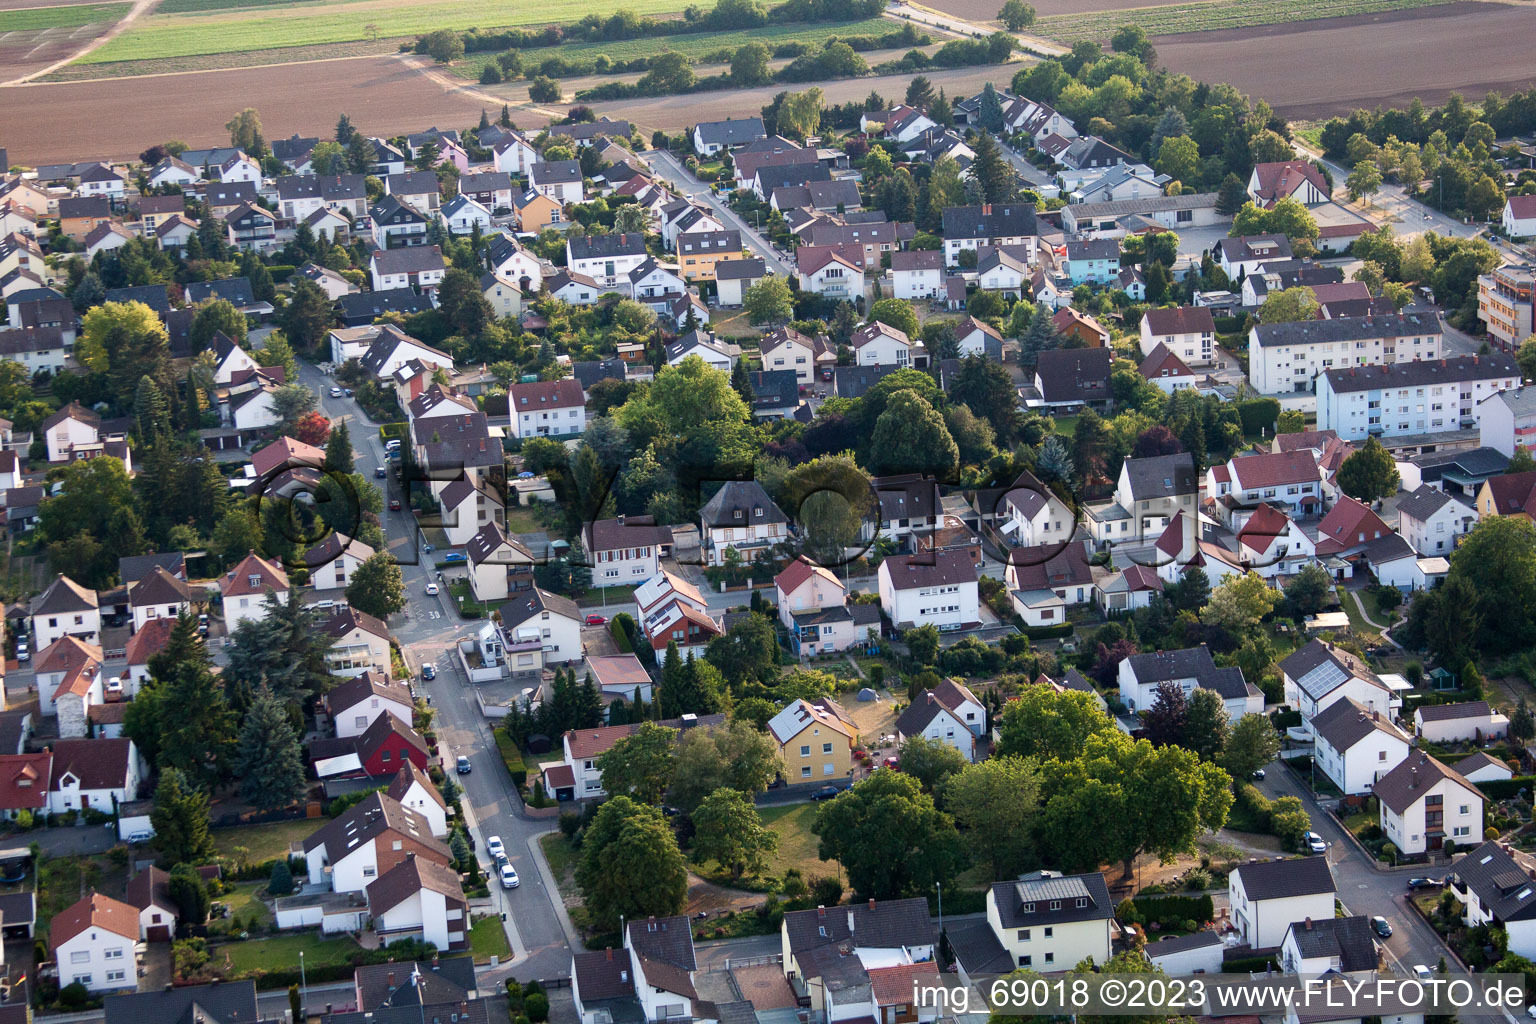 District Dannstadt in Dannstadt-Schauernheim in the state Rhineland-Palatinate, Germany seen from a drone